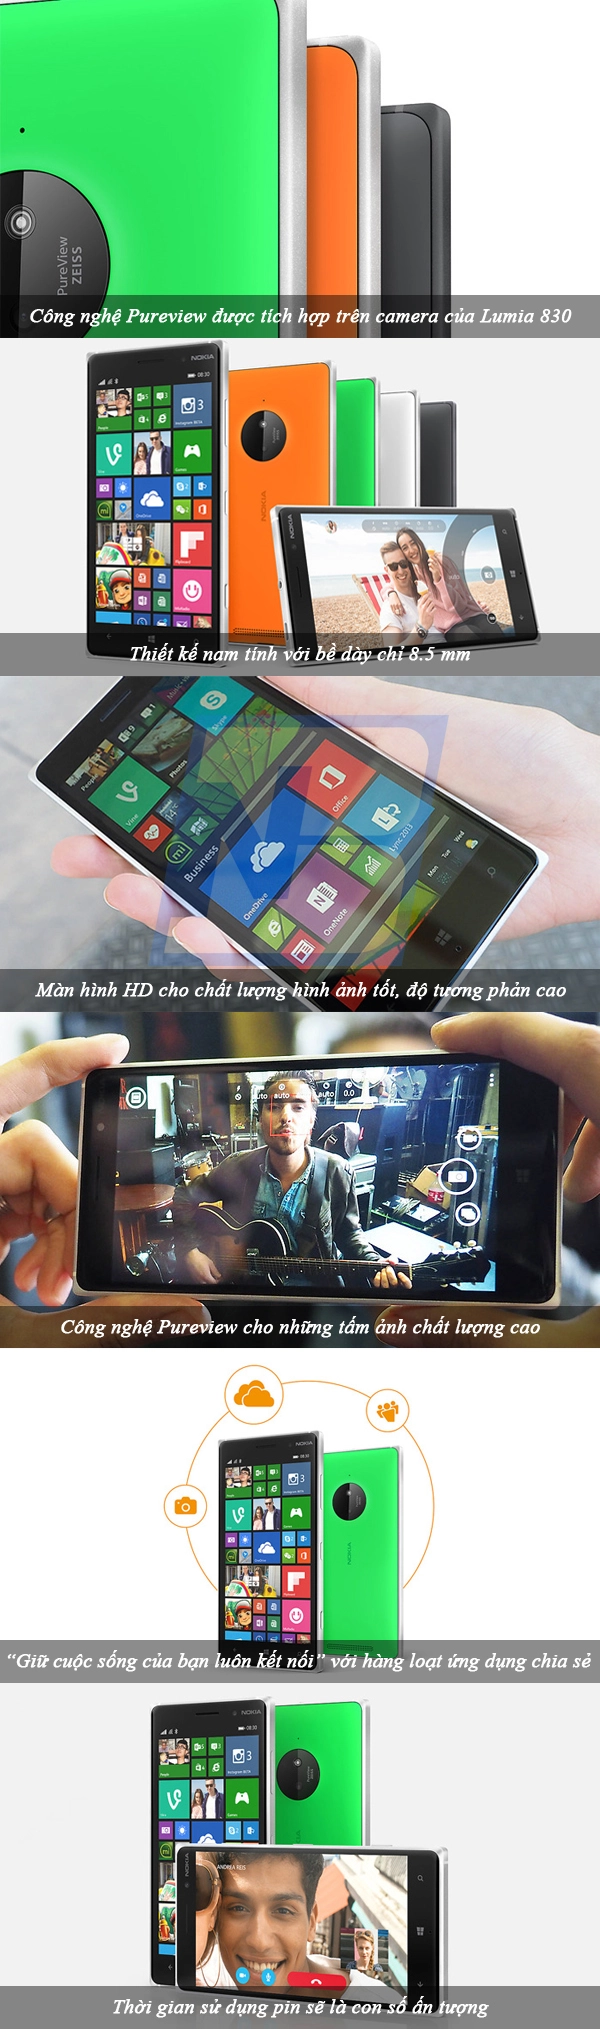 Nokia lumia 830 - 3